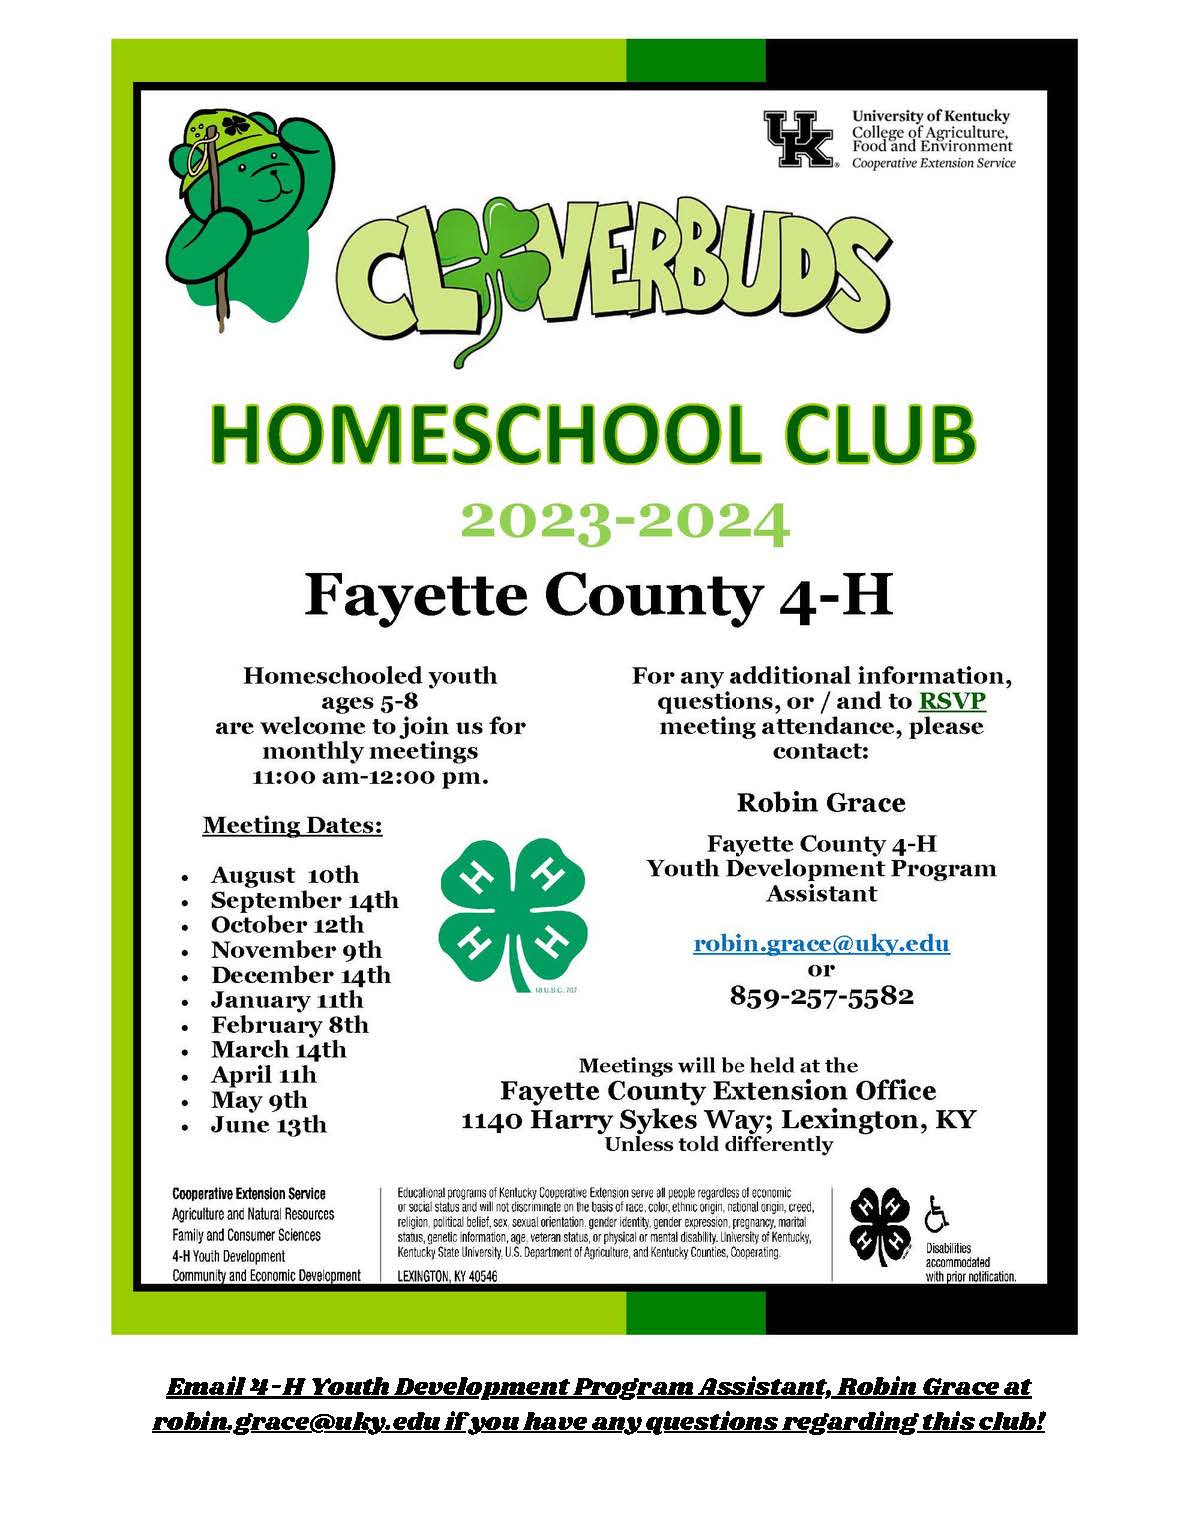 Cloverbuds Homeschool Club Flyer